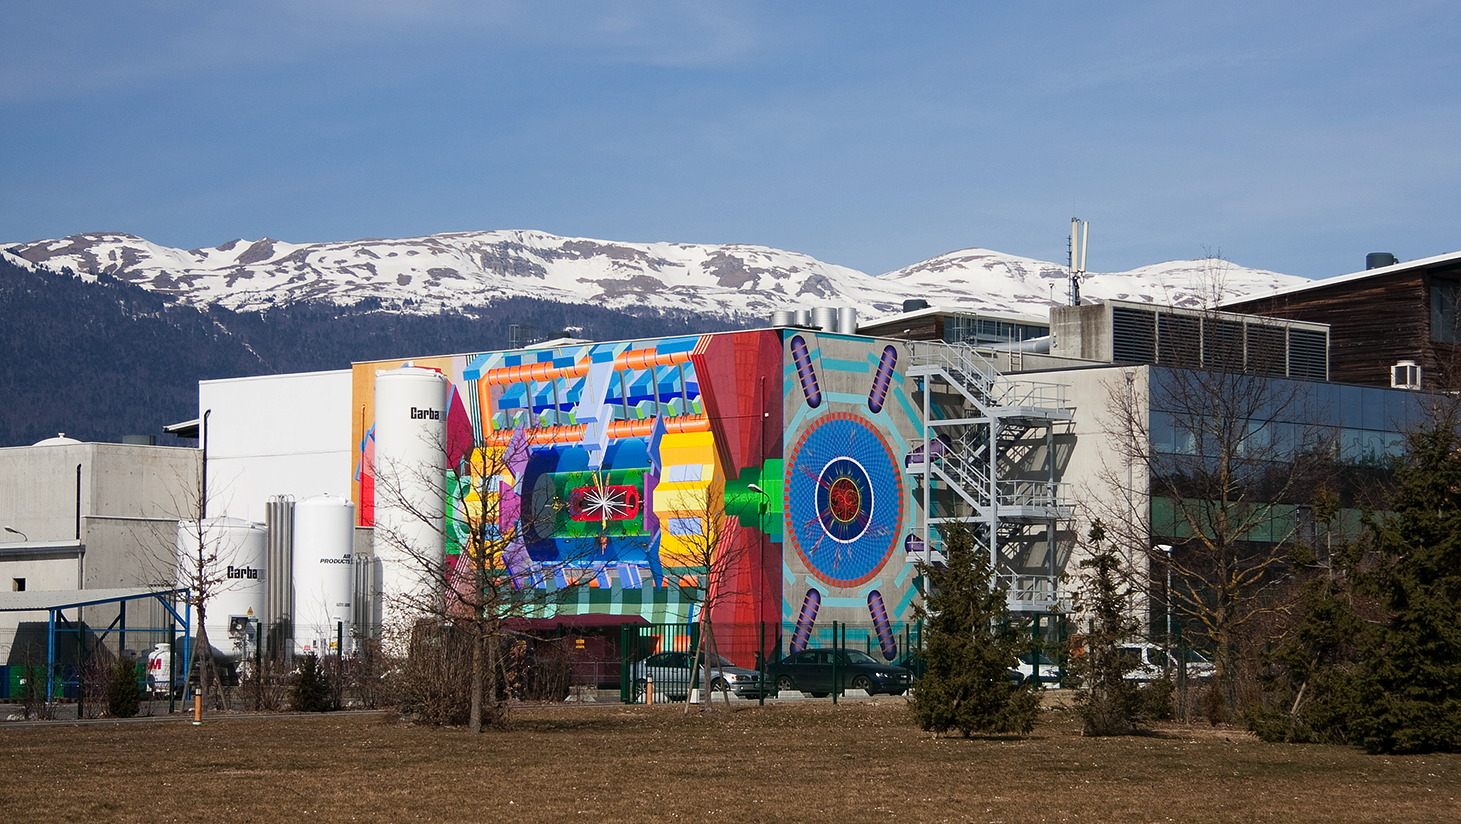 ATLAS Detector, CERN